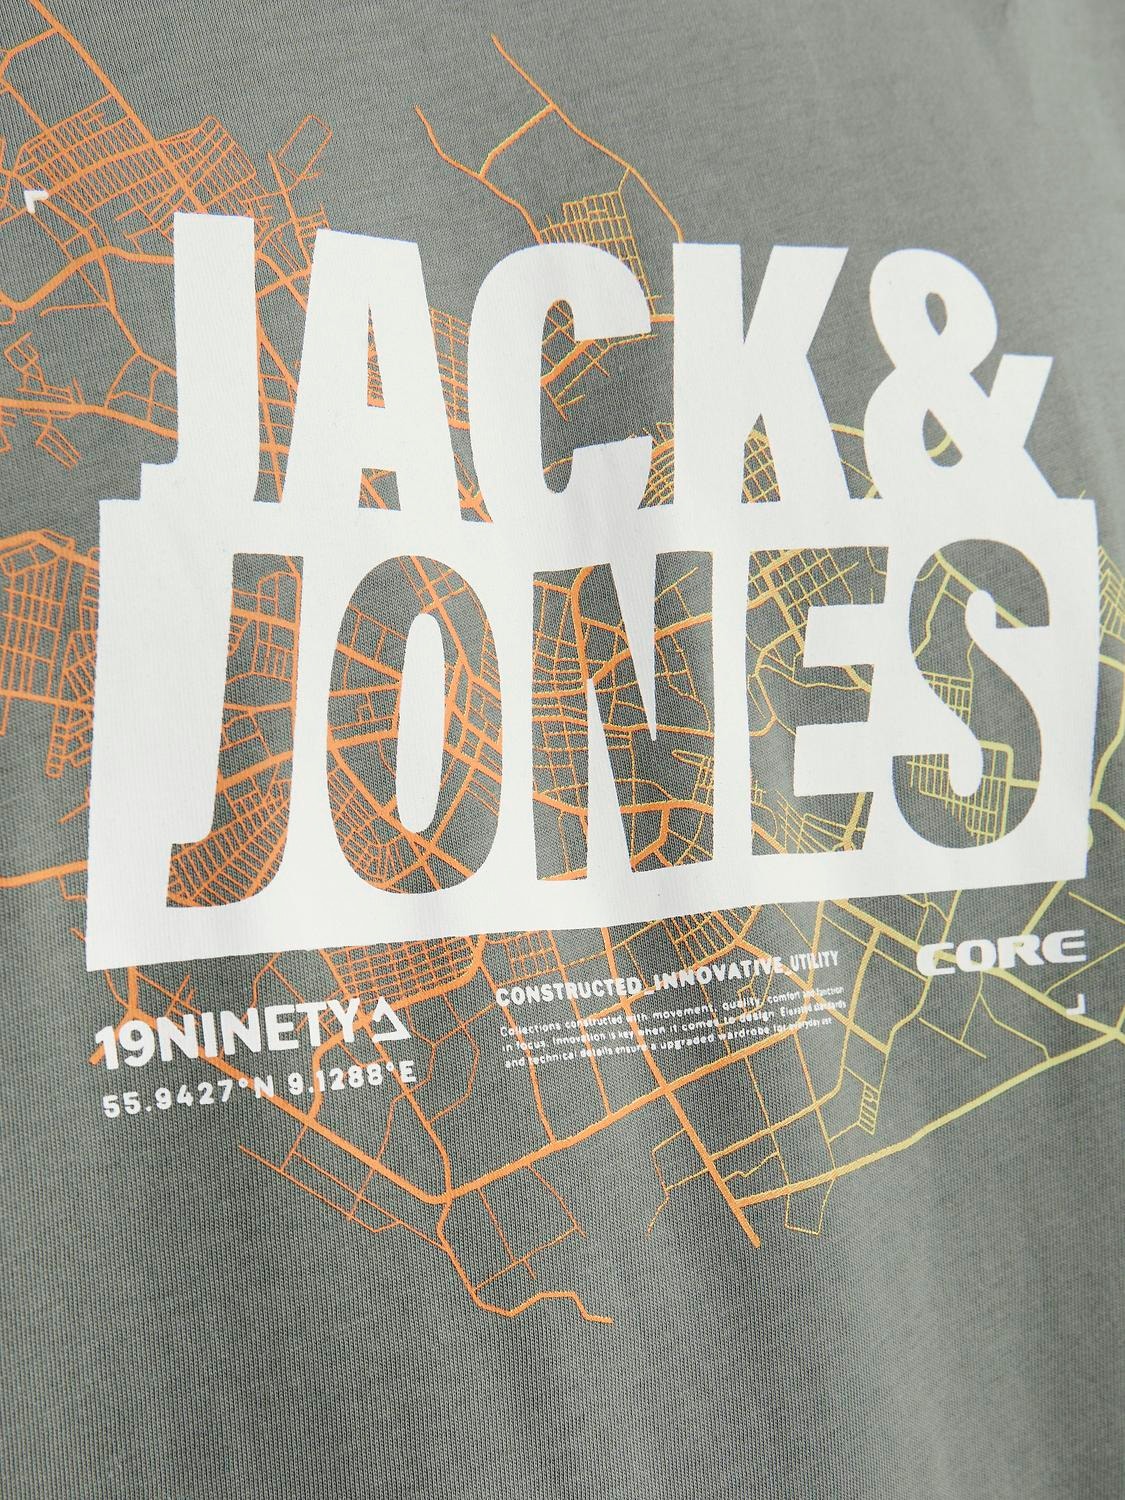 Jack & Jones Bedrukt Ronde hals T-shirt -Agave Green - 12252376